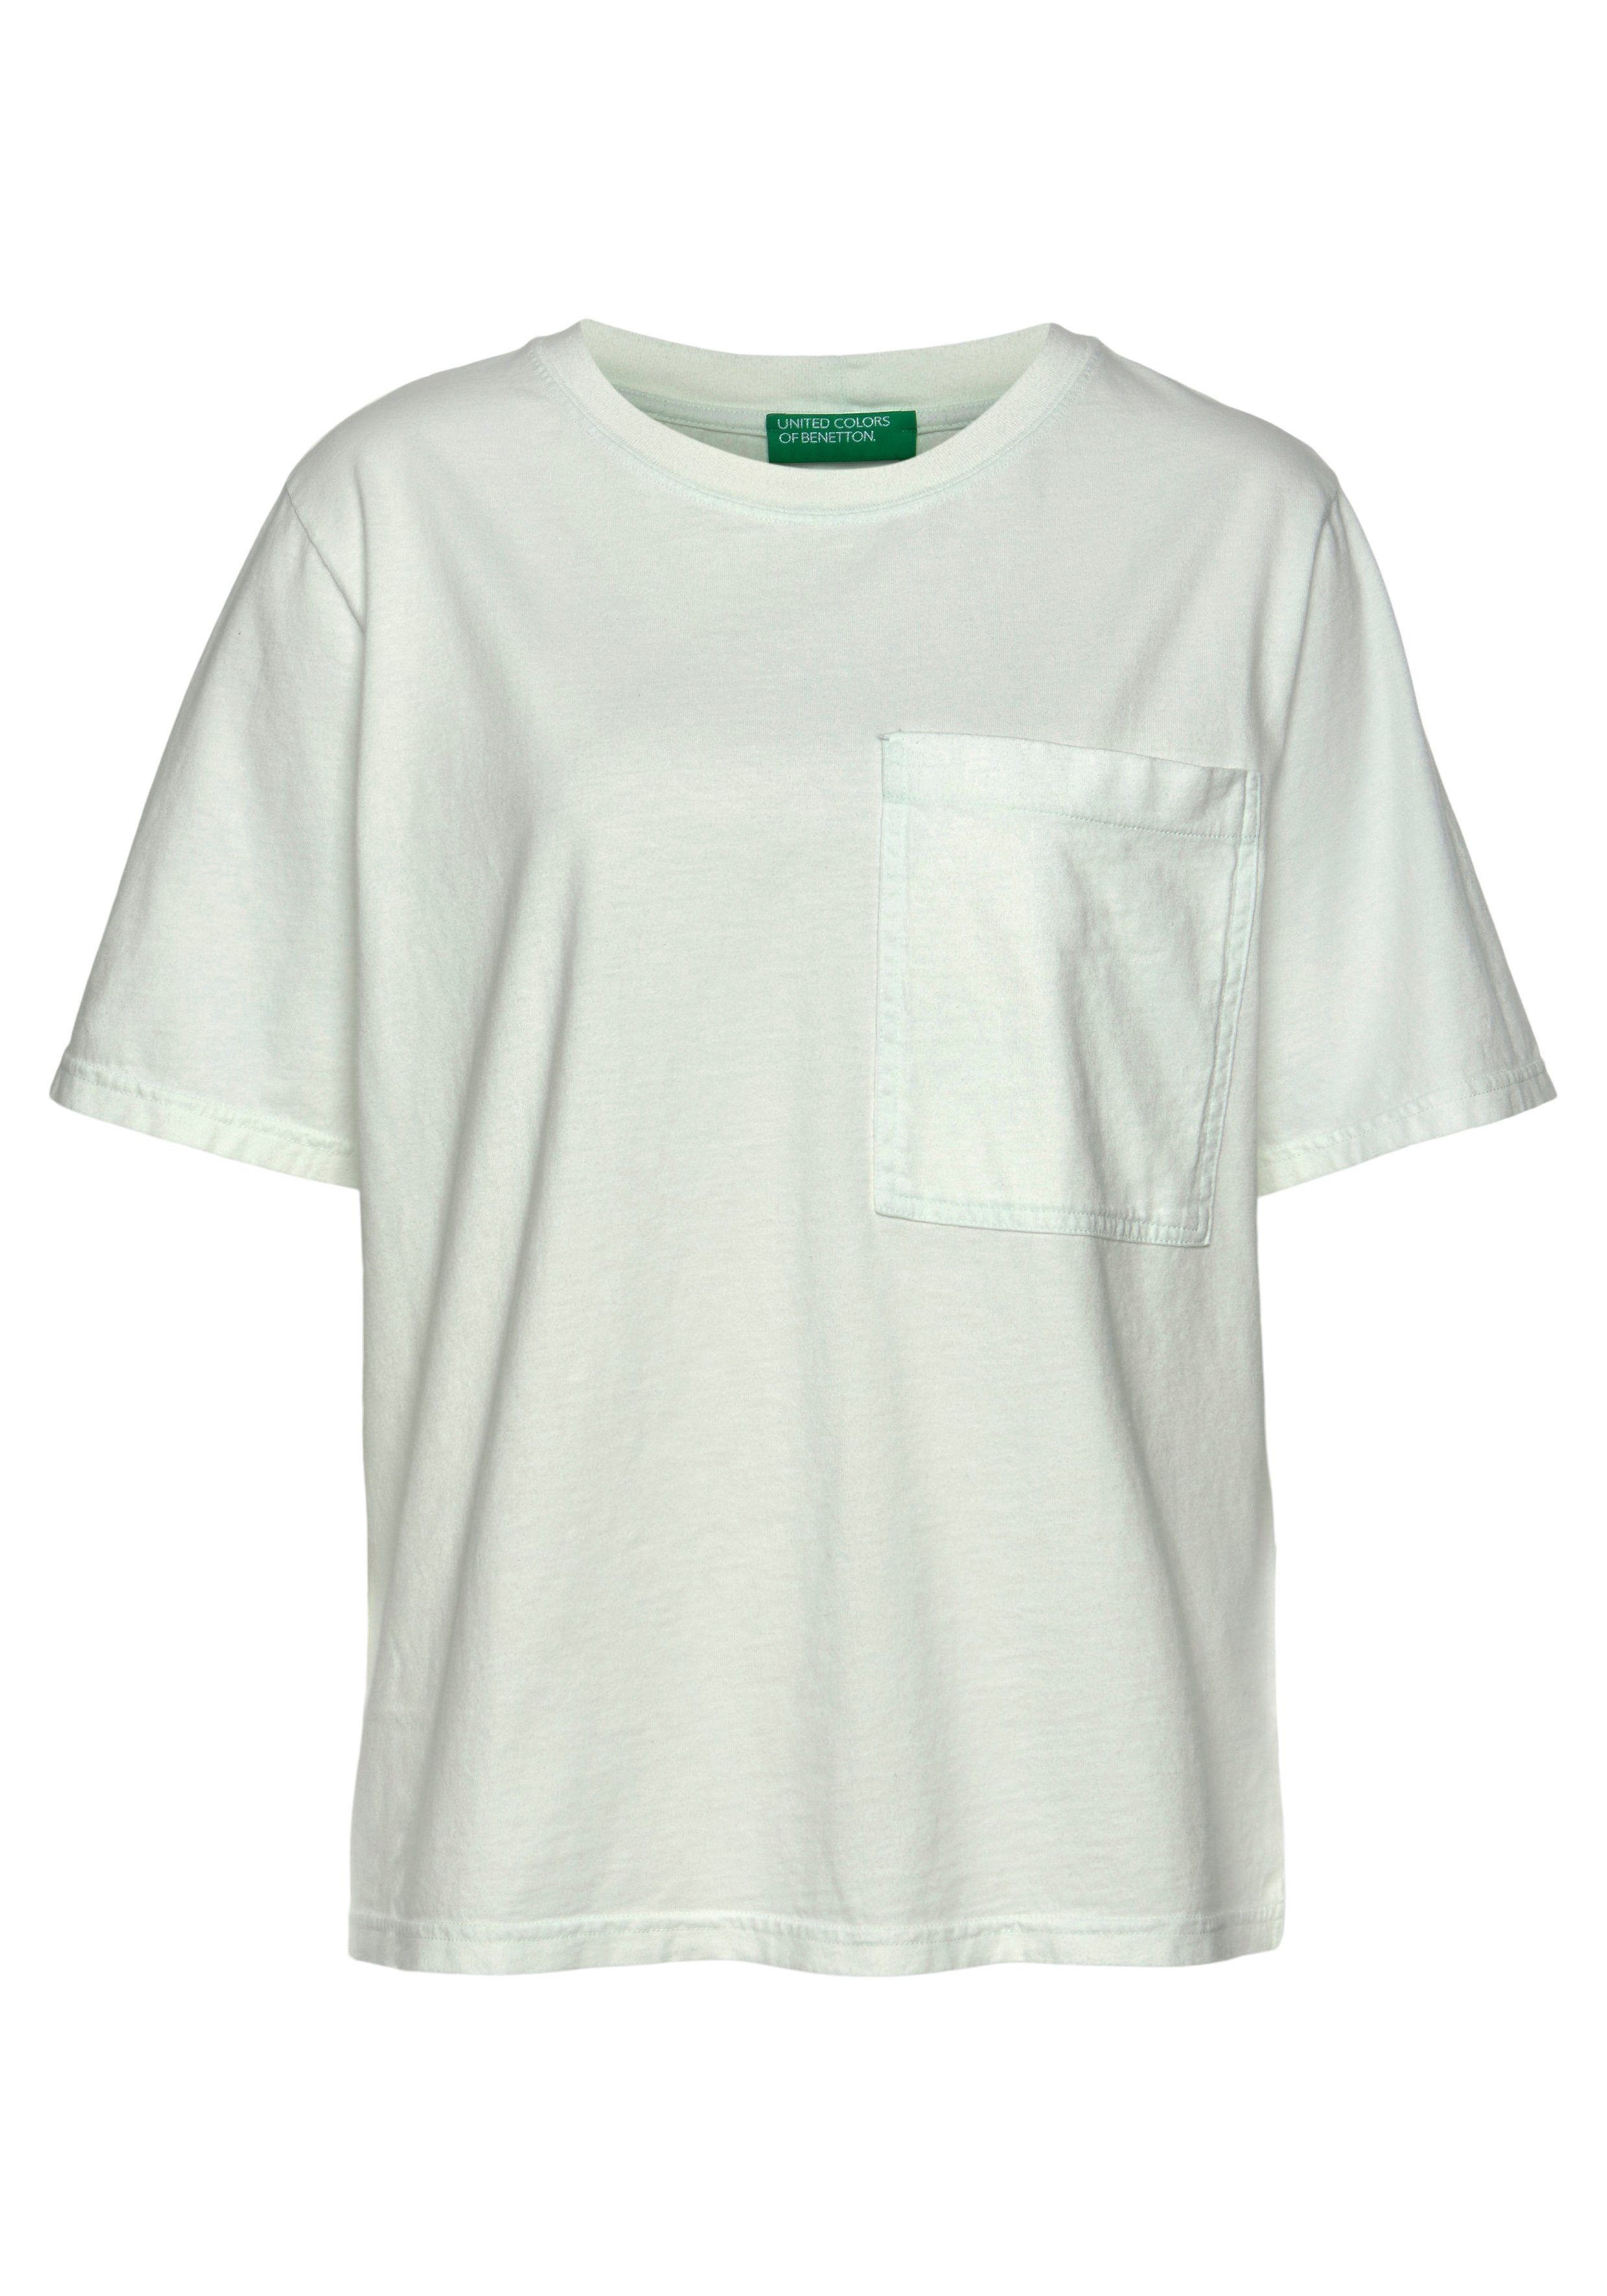 United Colors of Benetton T-Shirt großen, einer Brusttasche mit aufgesetzten